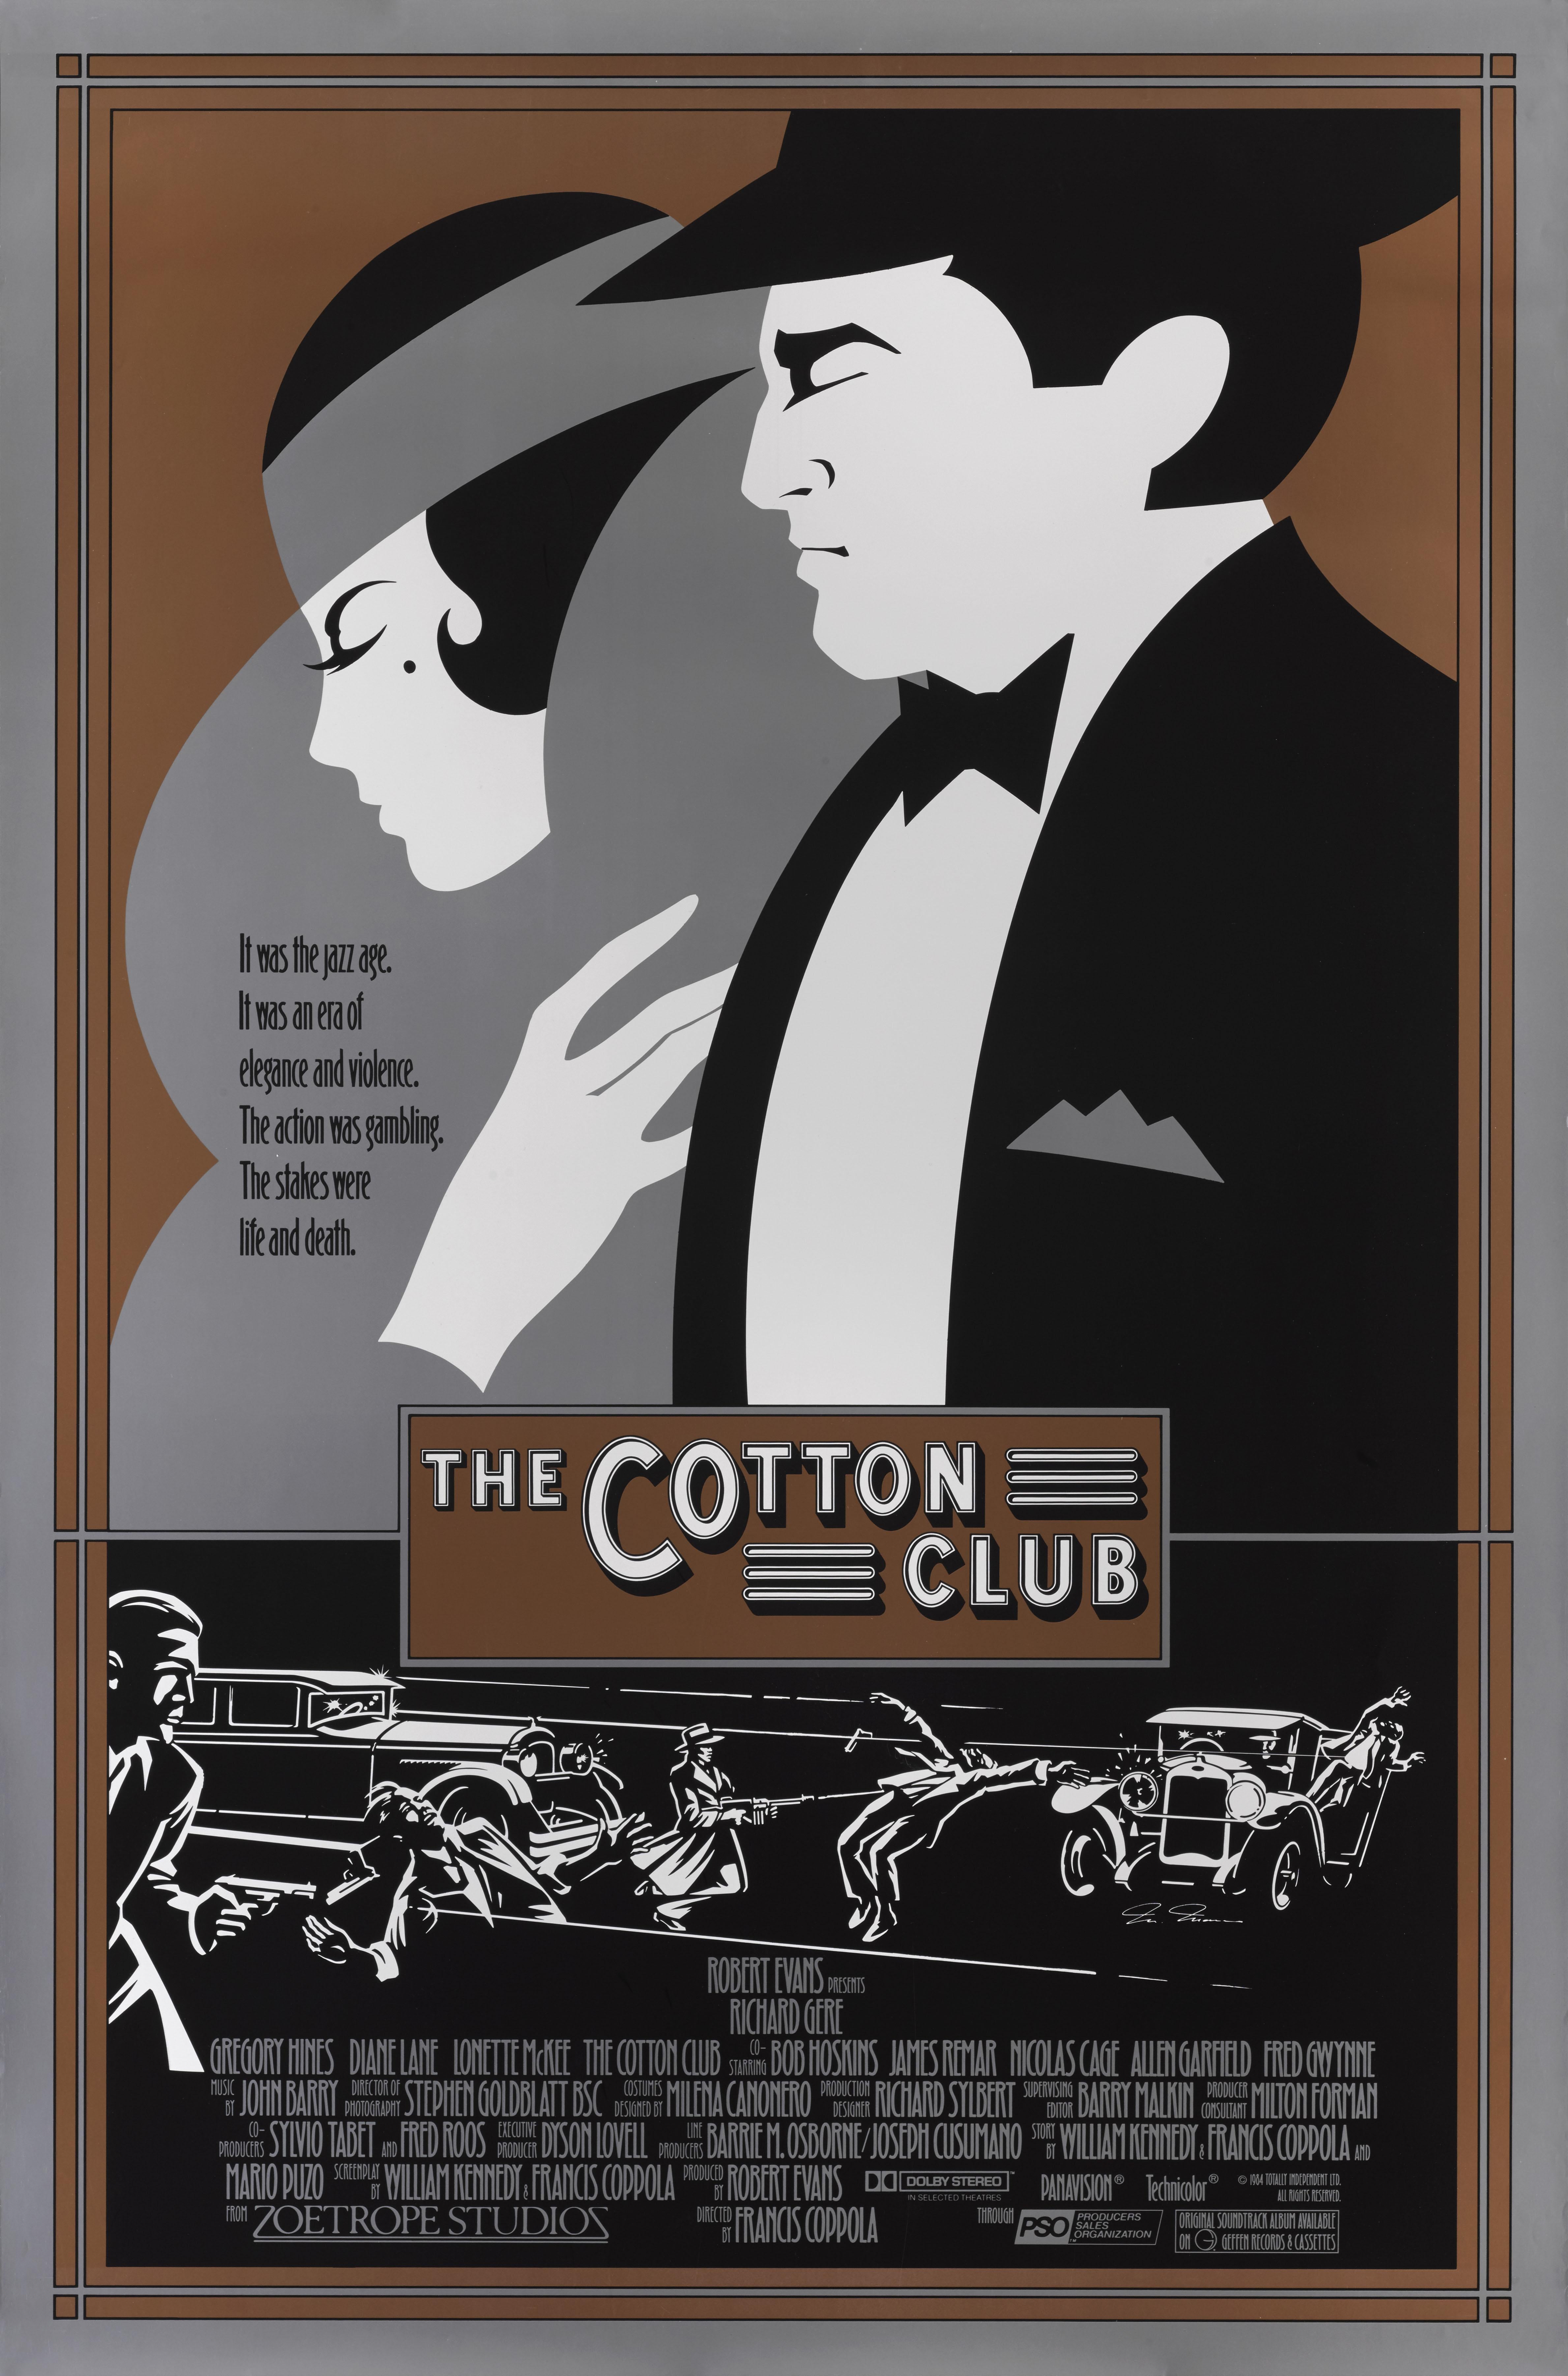 where was the original cotton club